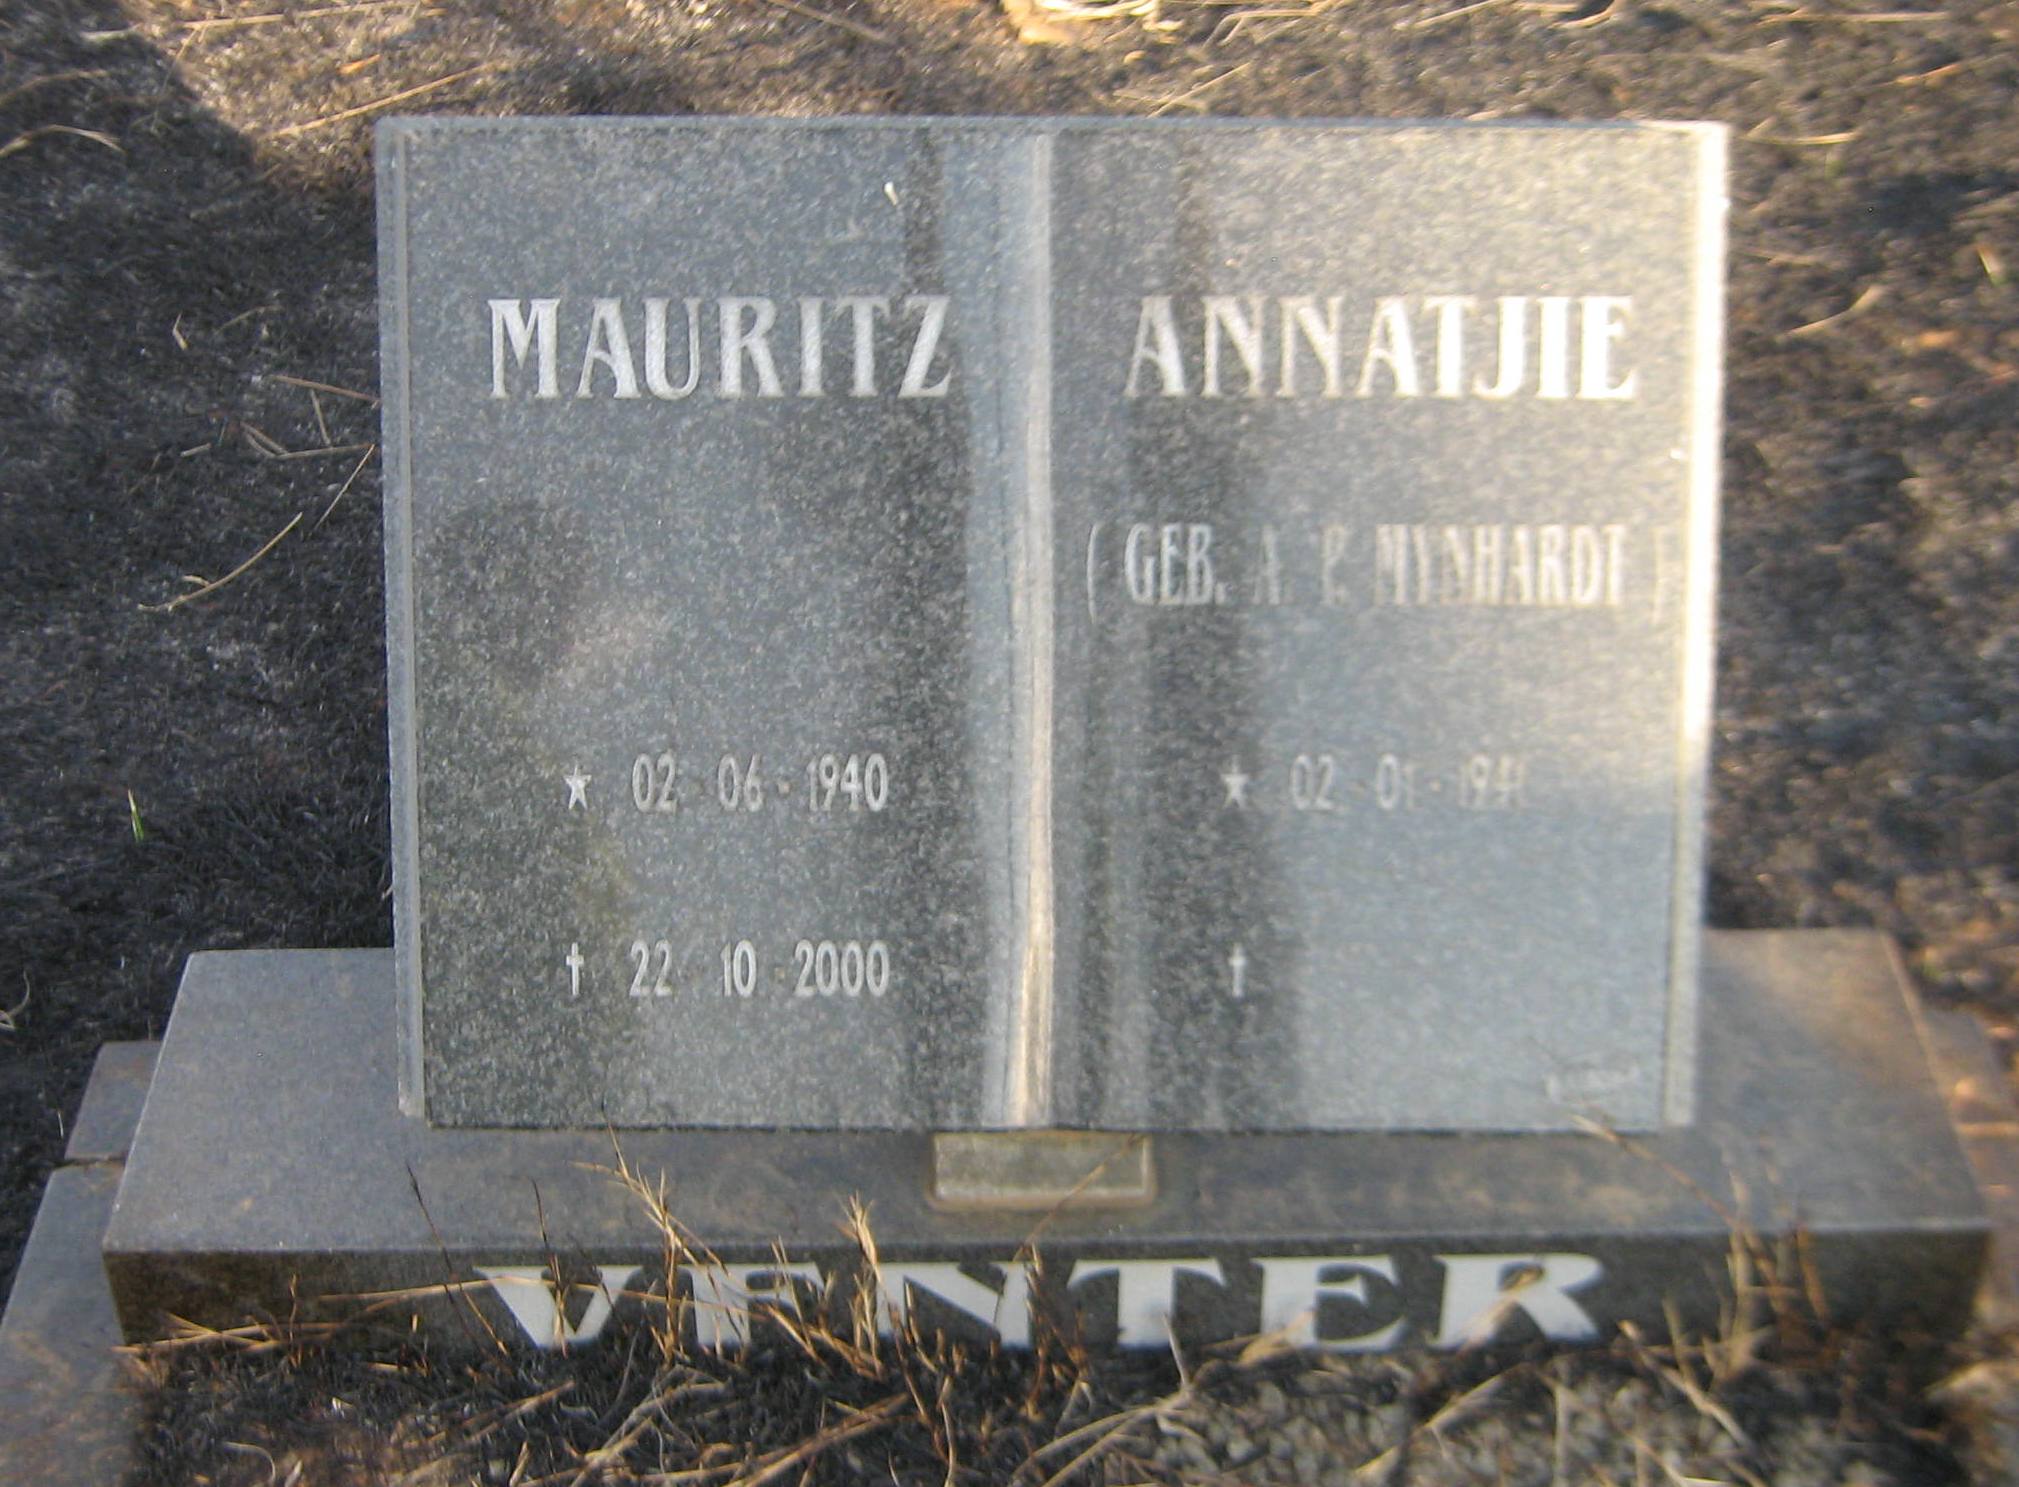 VENTER Mauritz 1940-2000 & Annatjie MYNHARDT 1941-